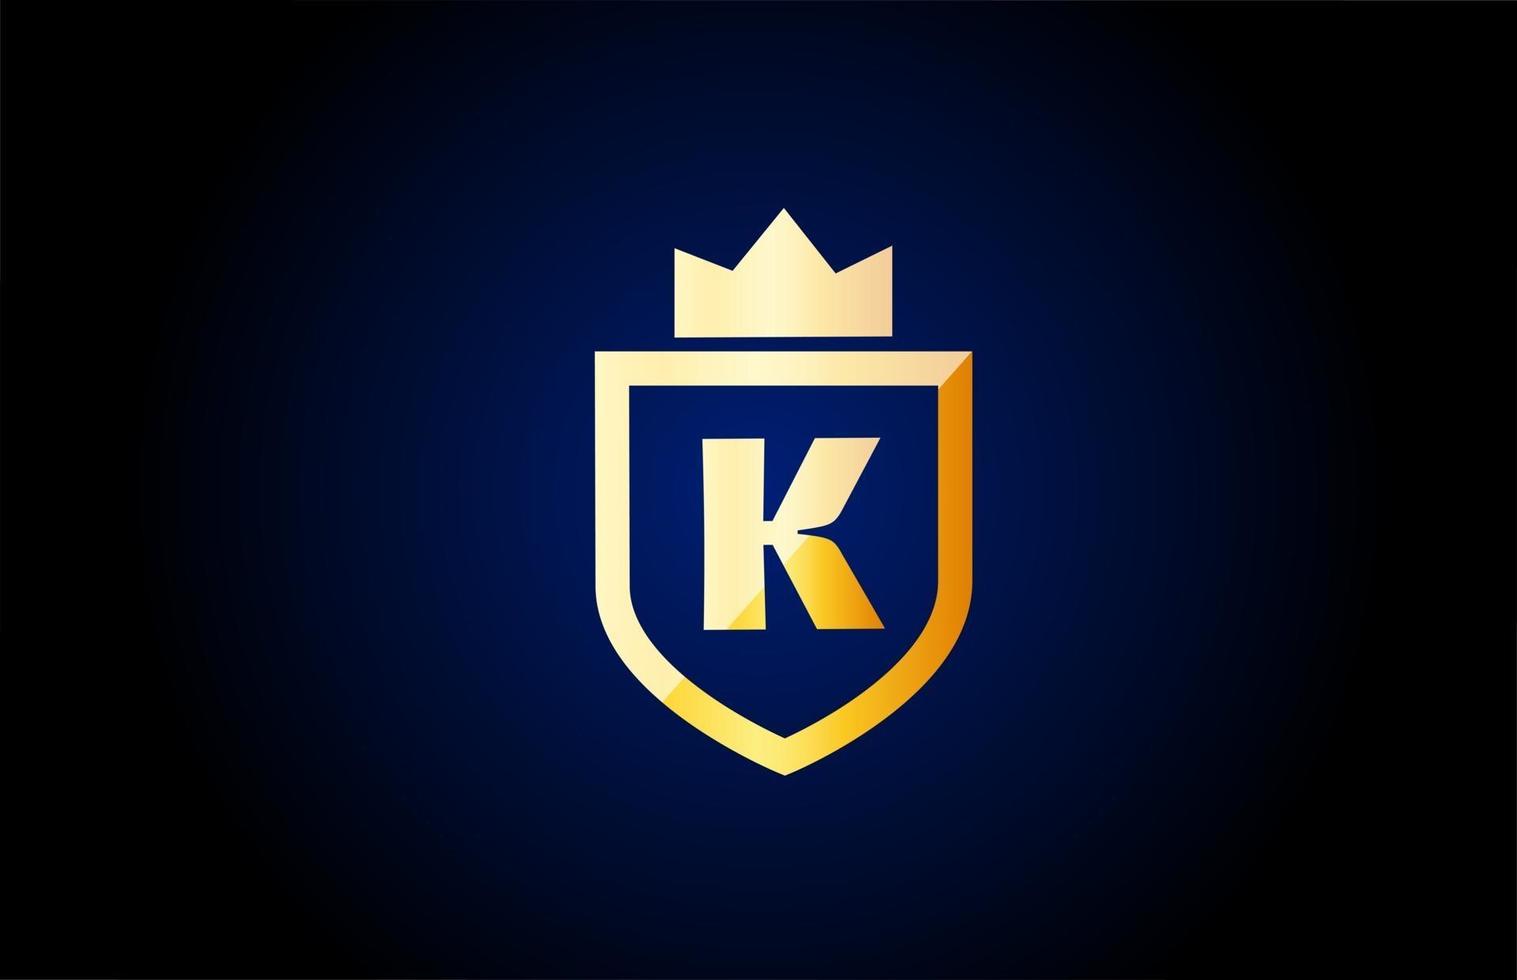 goud k alfabet letterpictogram logo. ontwerp voor zakelijke en bedrijfsidentiteit met schild en koningskroon vector